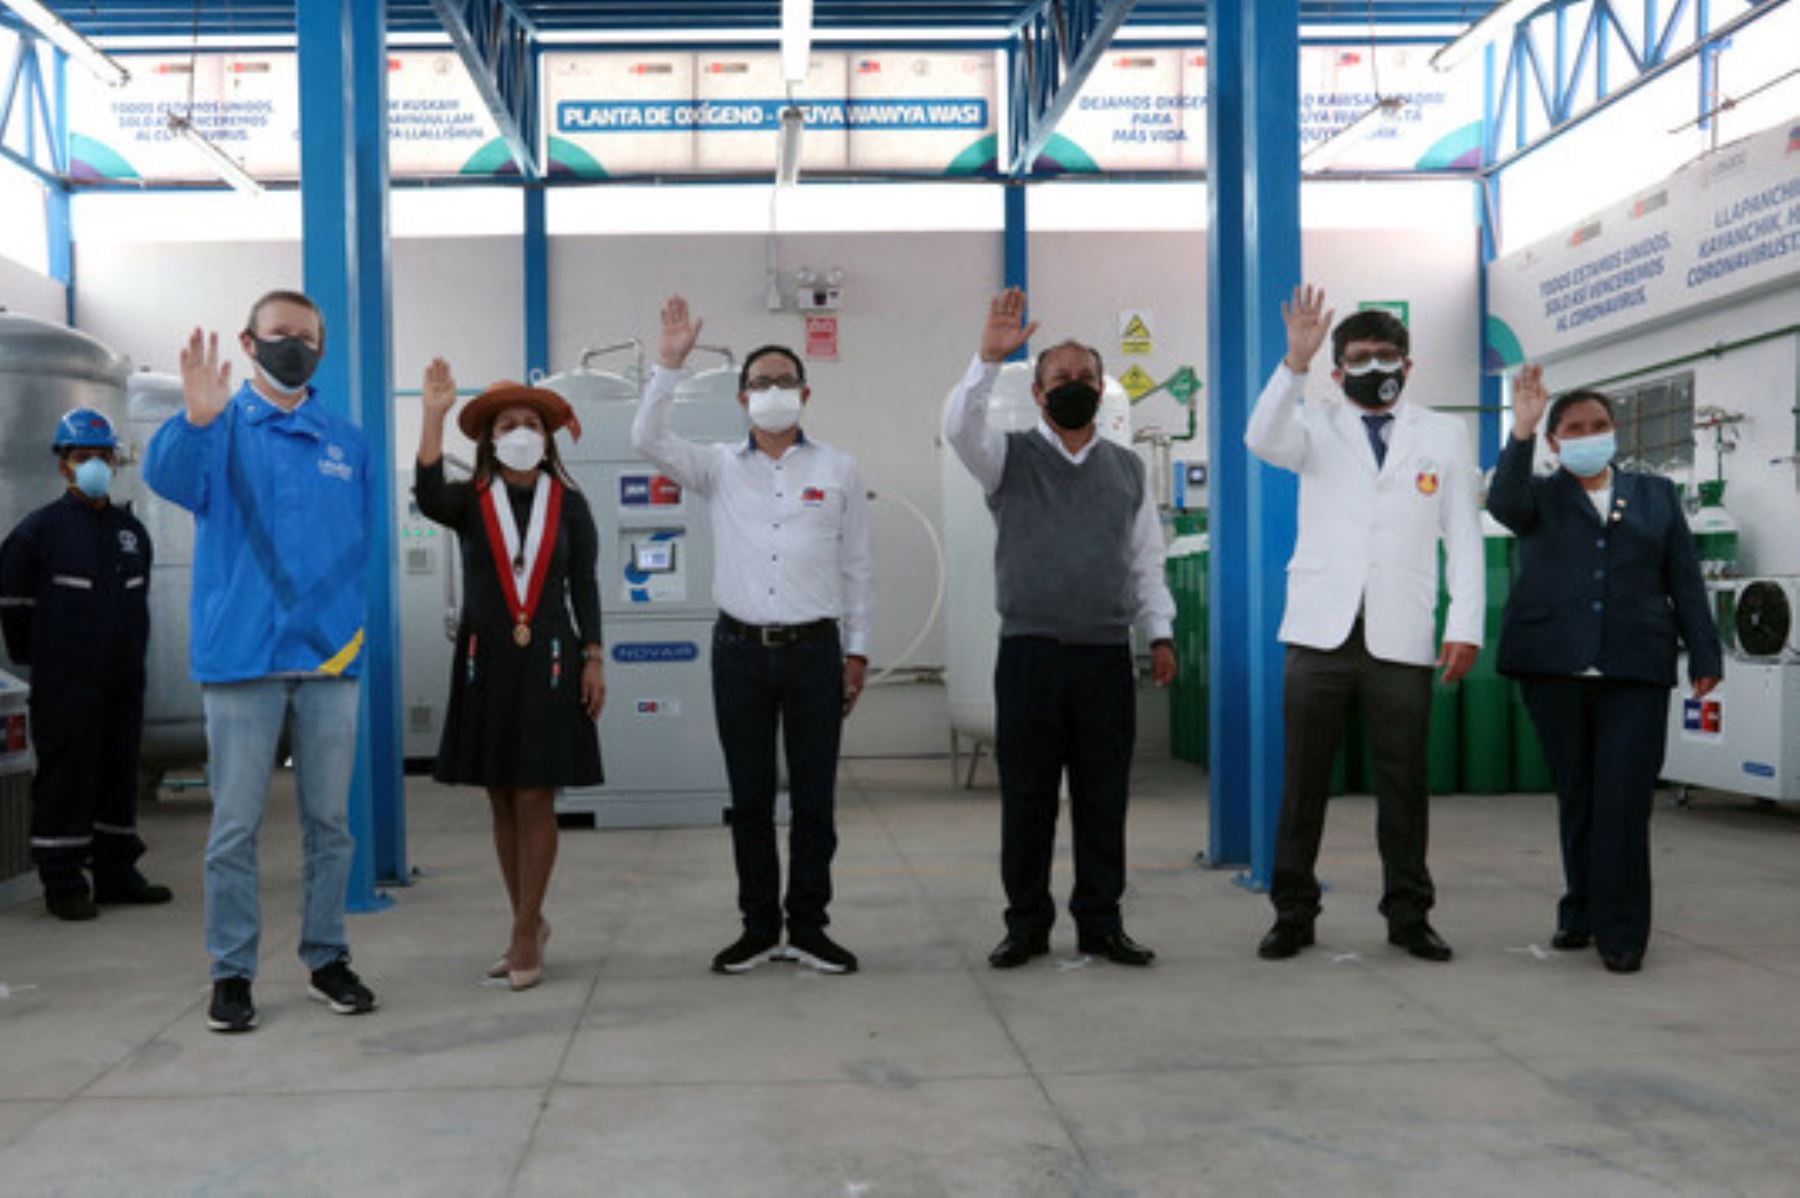 Legado inaugura undécima planta de oxígeno en Huancayo que beneficiará a 600,000 personas